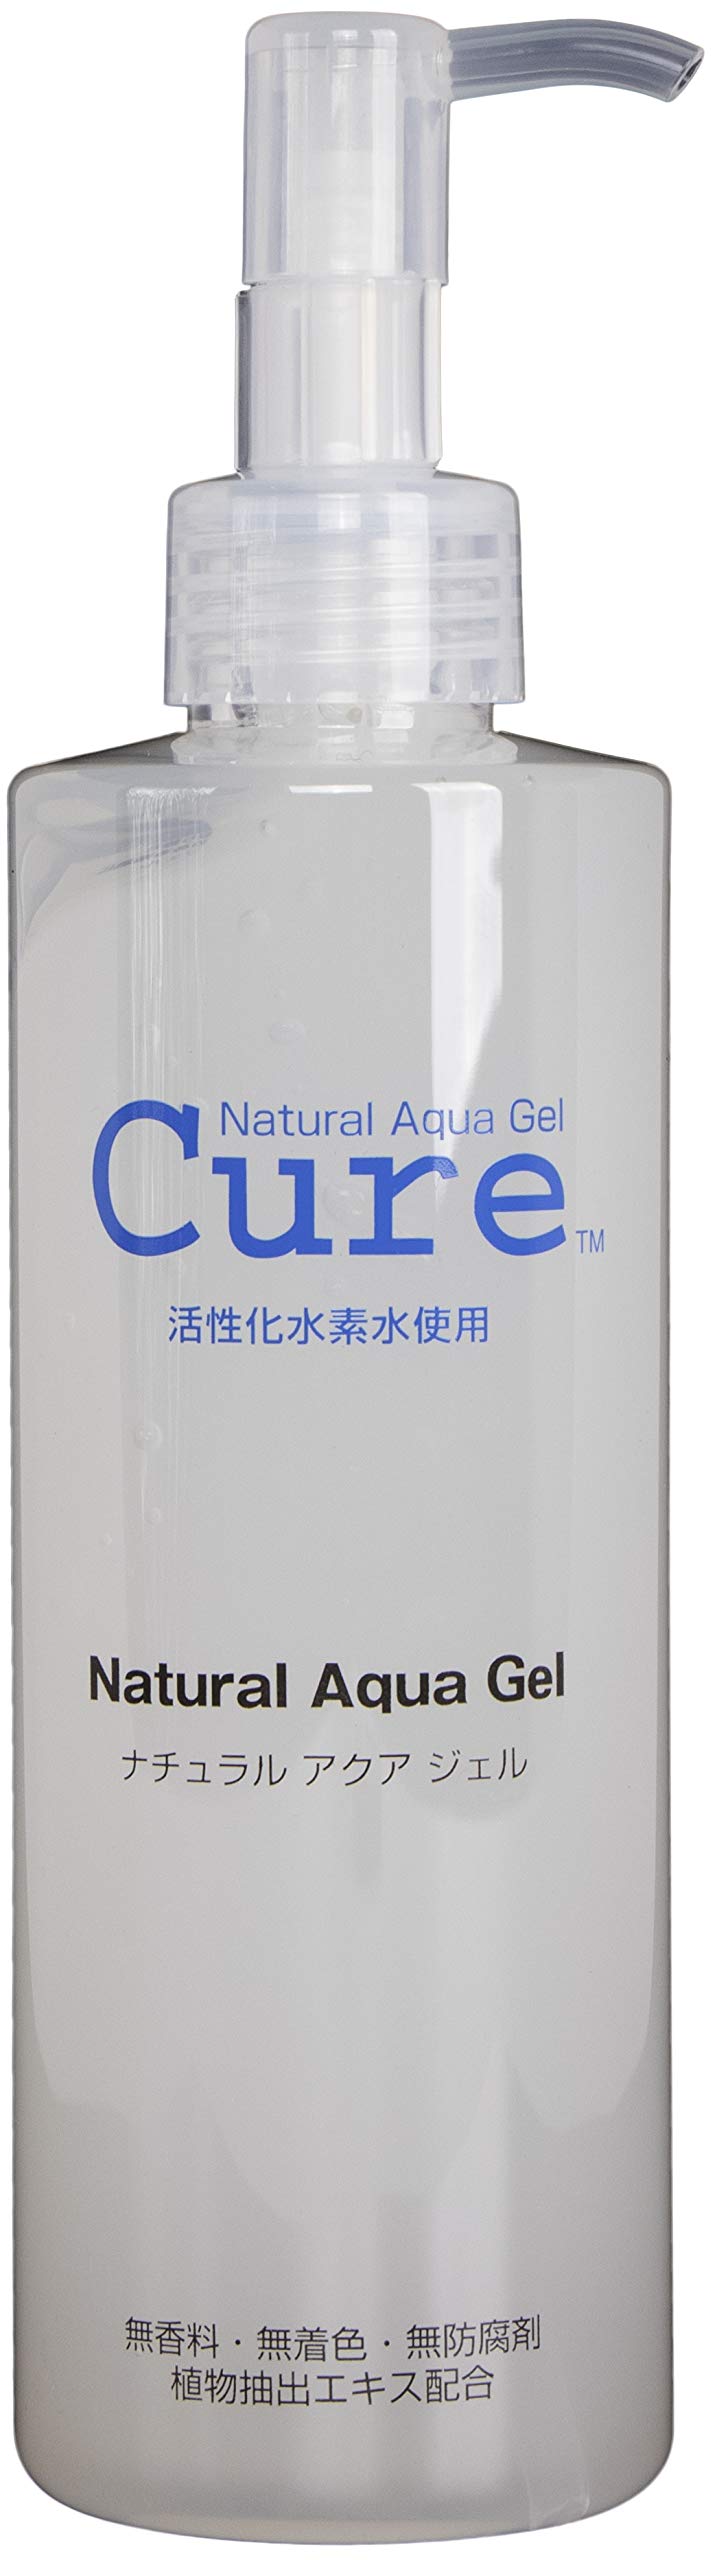 Aqua gel отзывы. Natural Aqua Gel. Скатка для лица Aqua. Cure natural Aqua Gel. Аква гель для лица.